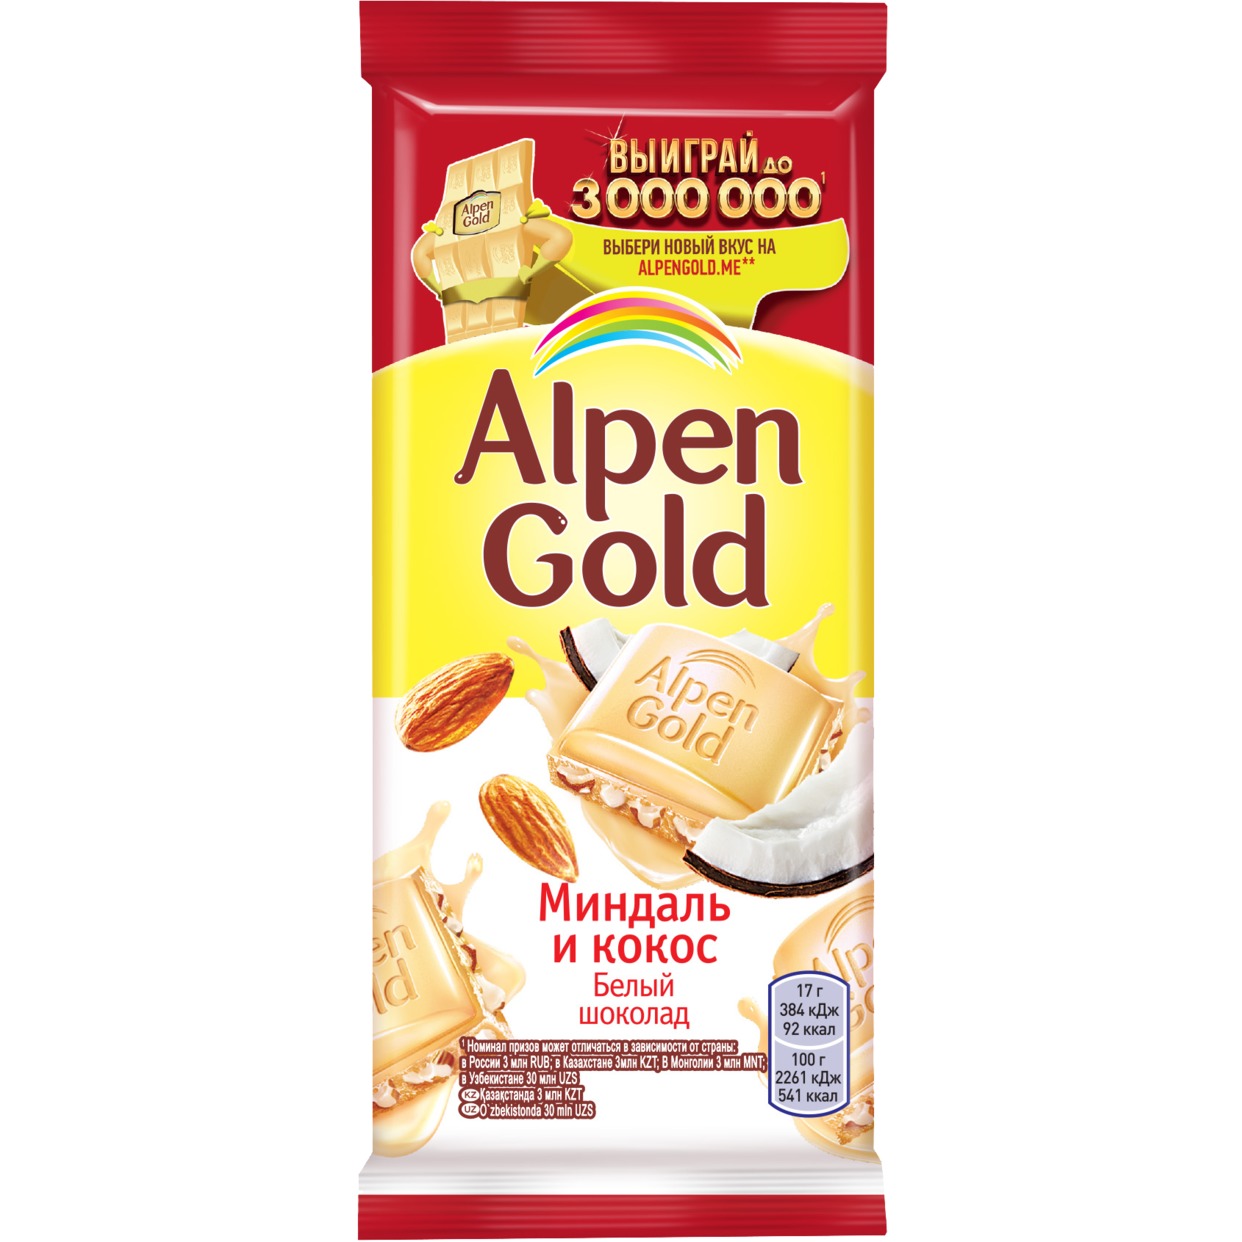 Шоколад белый Alpen Gold Альпен Гольд с миндалем и кокосовой стружкой, 85г по акции в Пятерочке